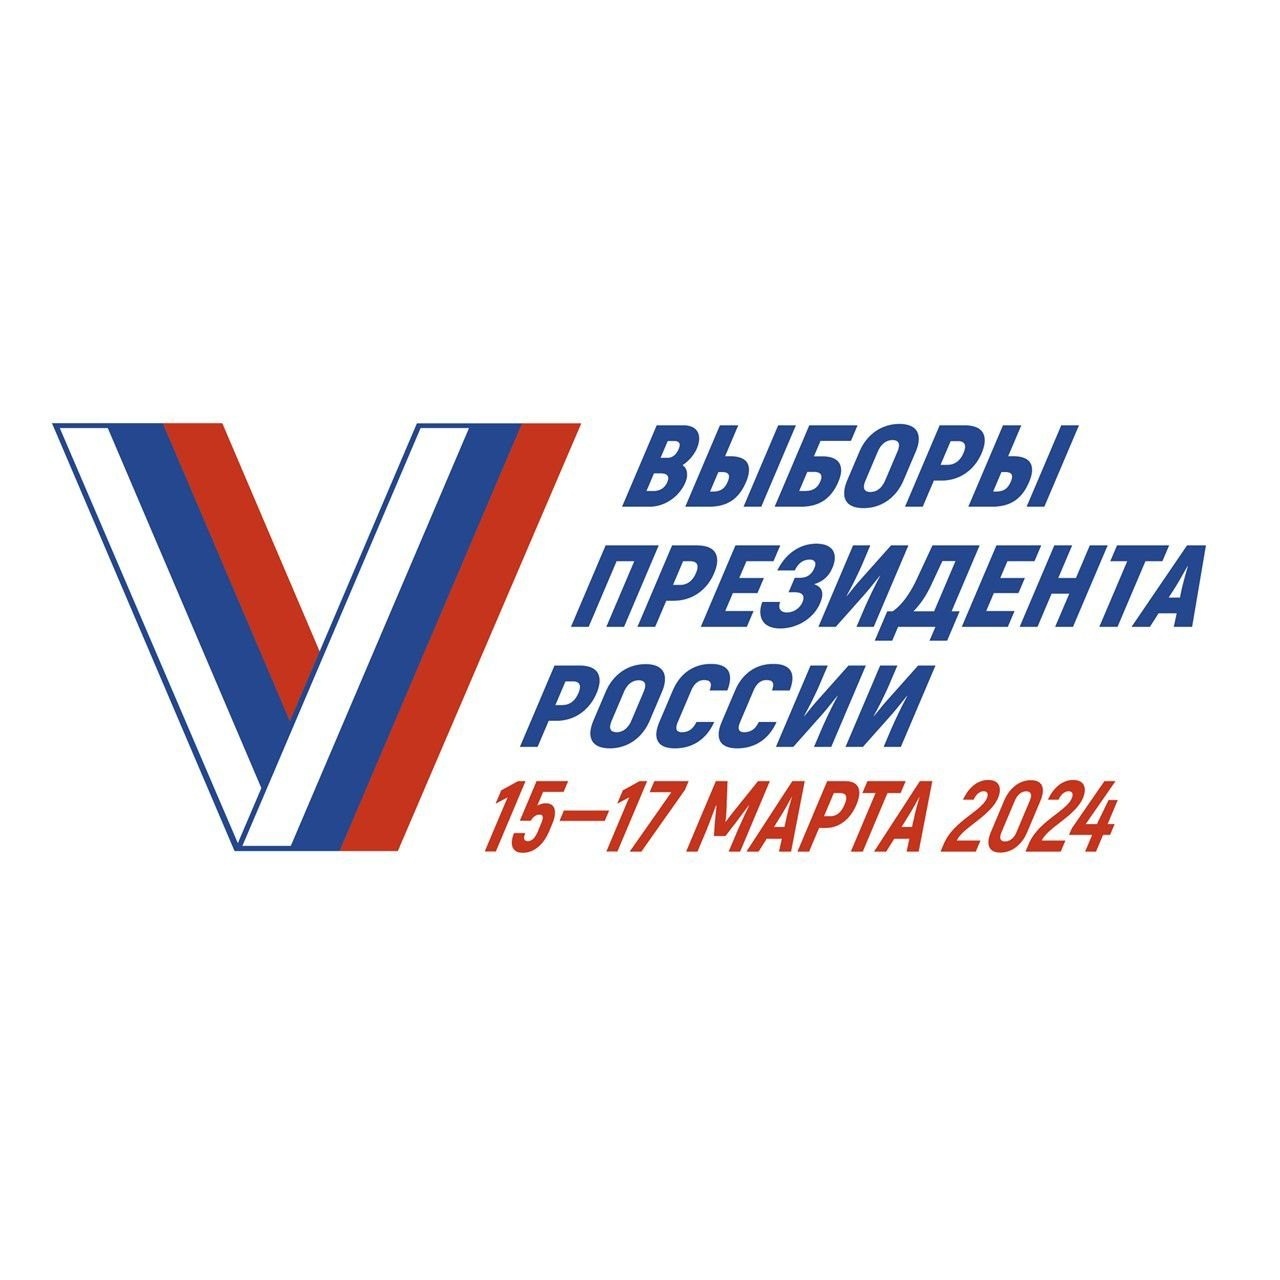 Жители Башкортостана могут выбрать удобный избирательный участок для голосования и подать заявление до 11 марта 2024 года: https://vk